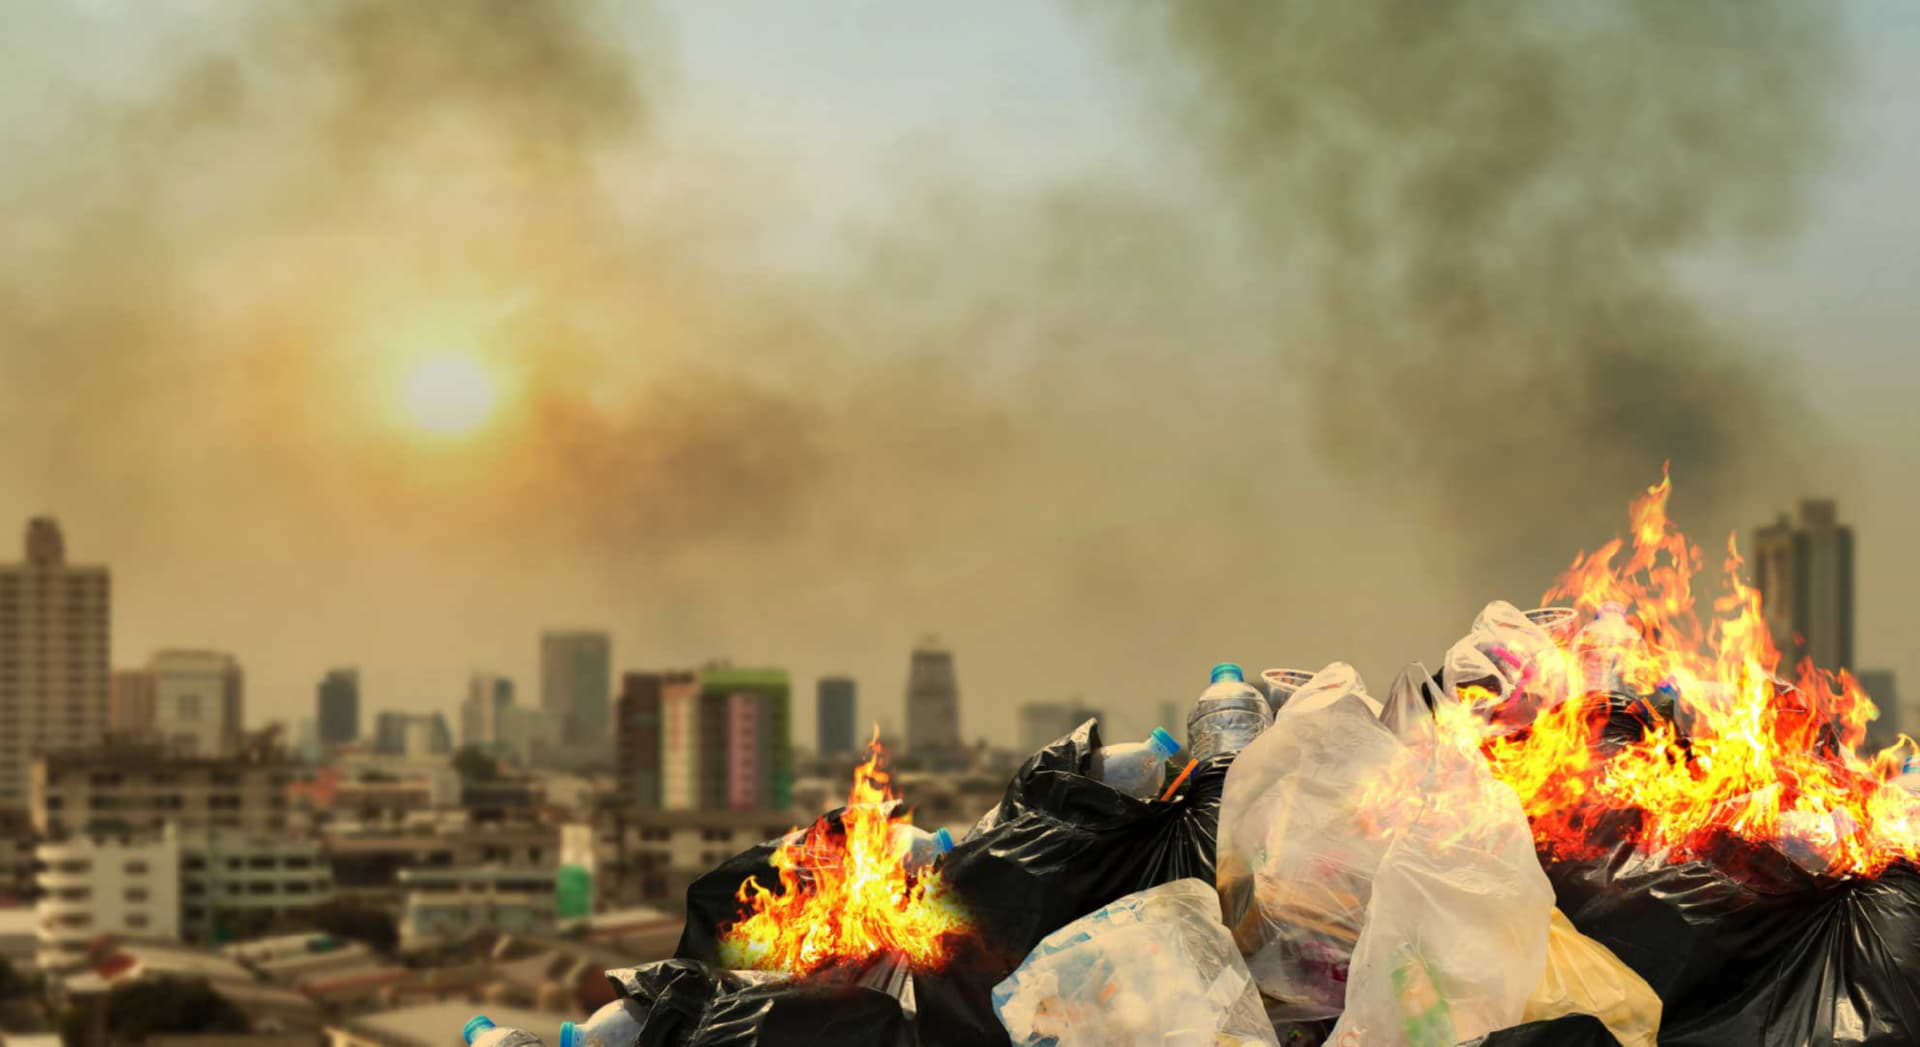 Arderea deșeurilor, sancționată cu amendă usturătoare